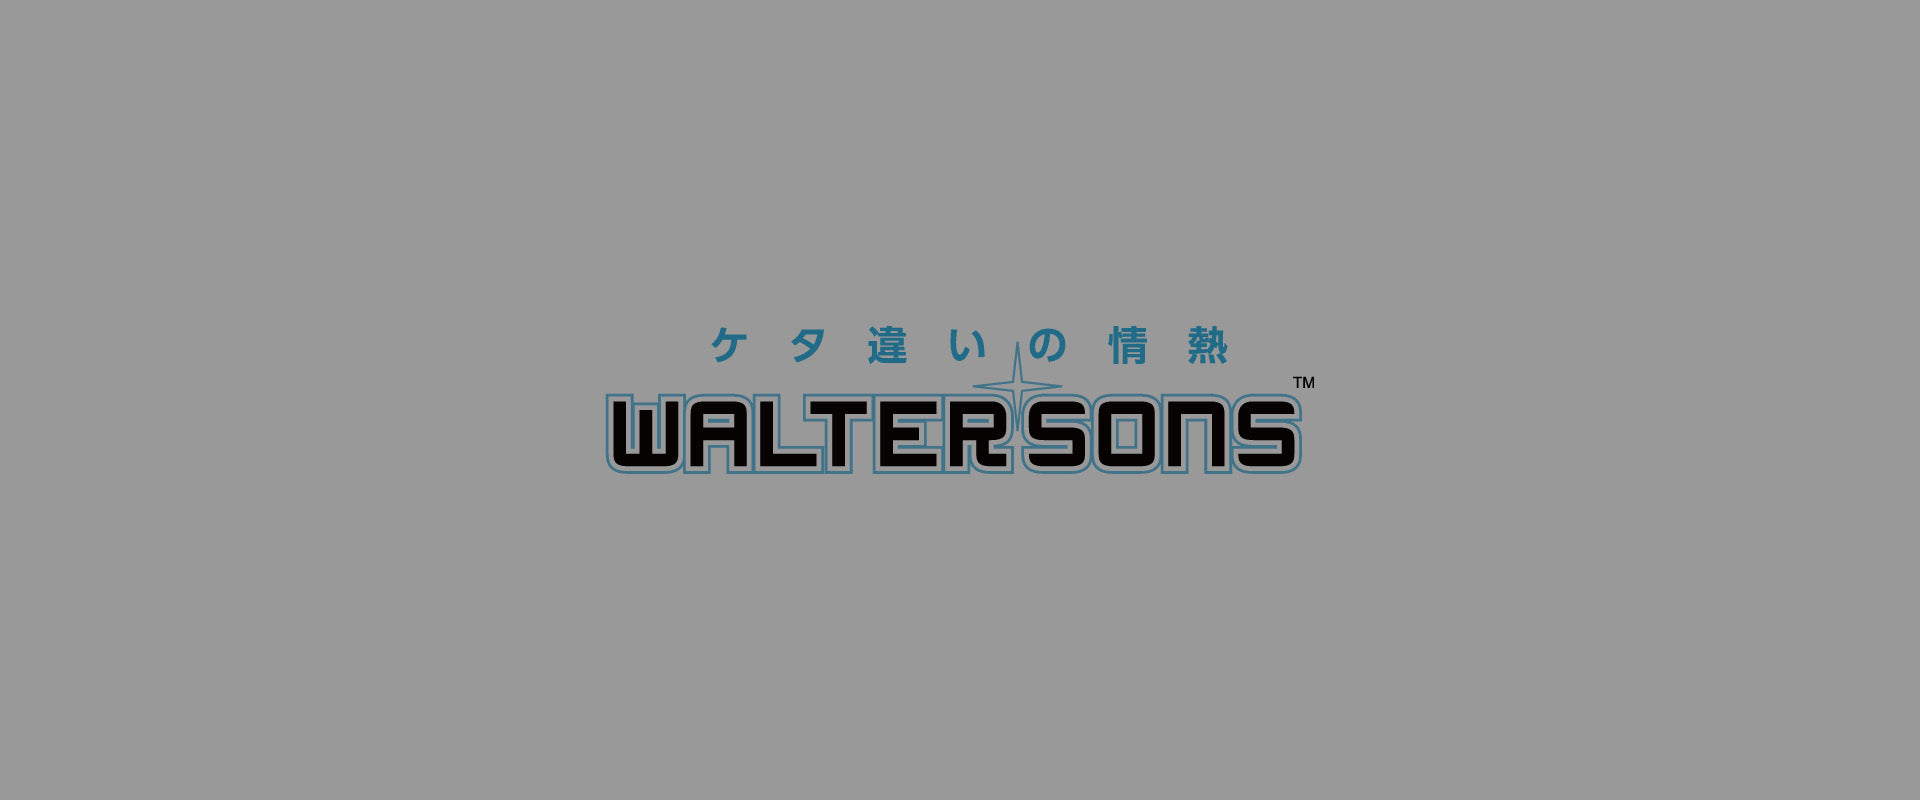 WALTERSONS(ウォルターソンズ)